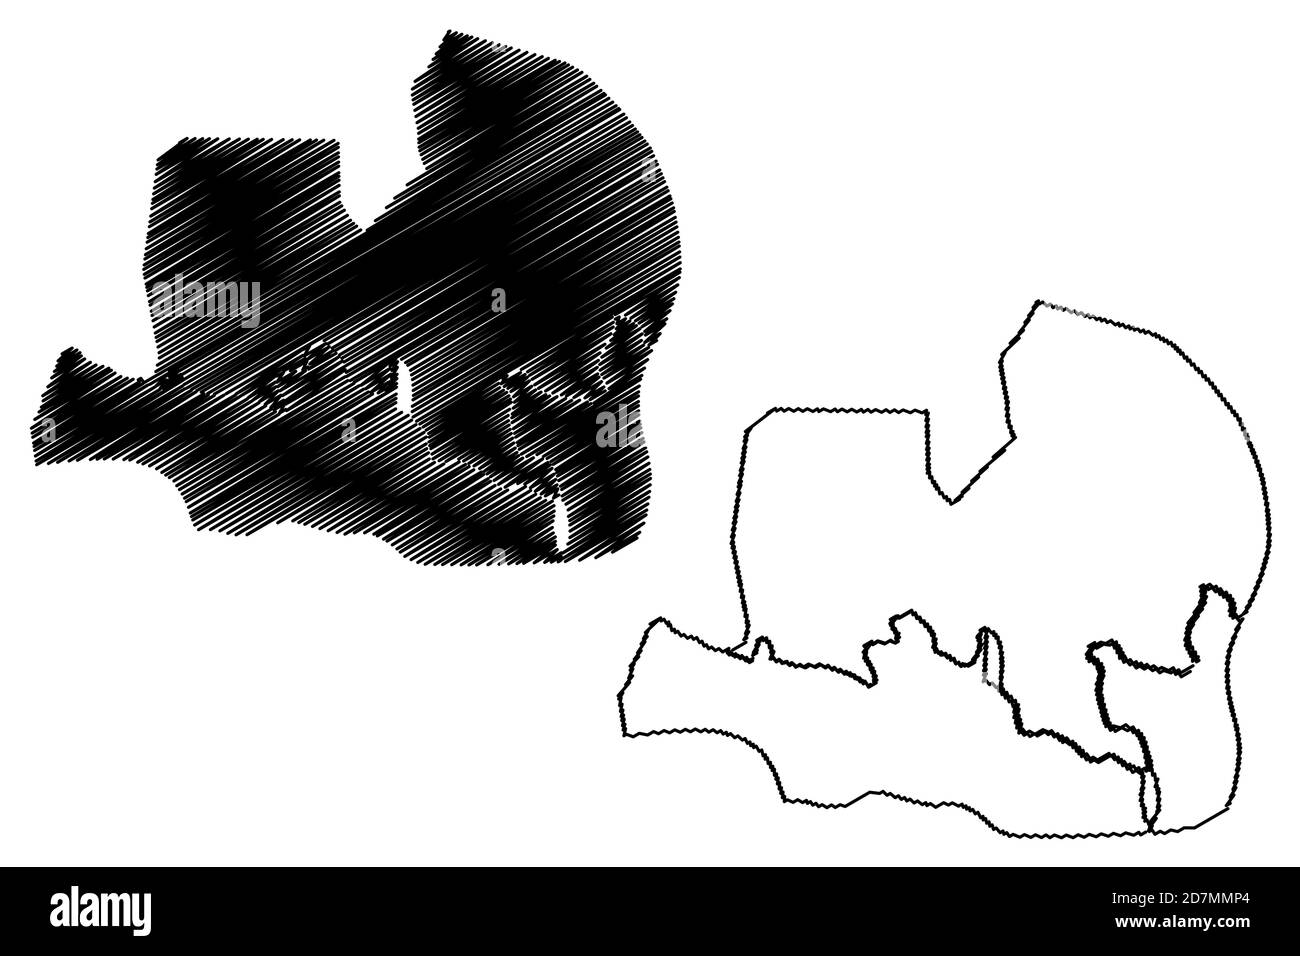 Ciudad de la Paz City (Republic of Equatorial Guinea, Djibloho Province) map vector illustration, scribble sketch City of Oyala map Stock Vector